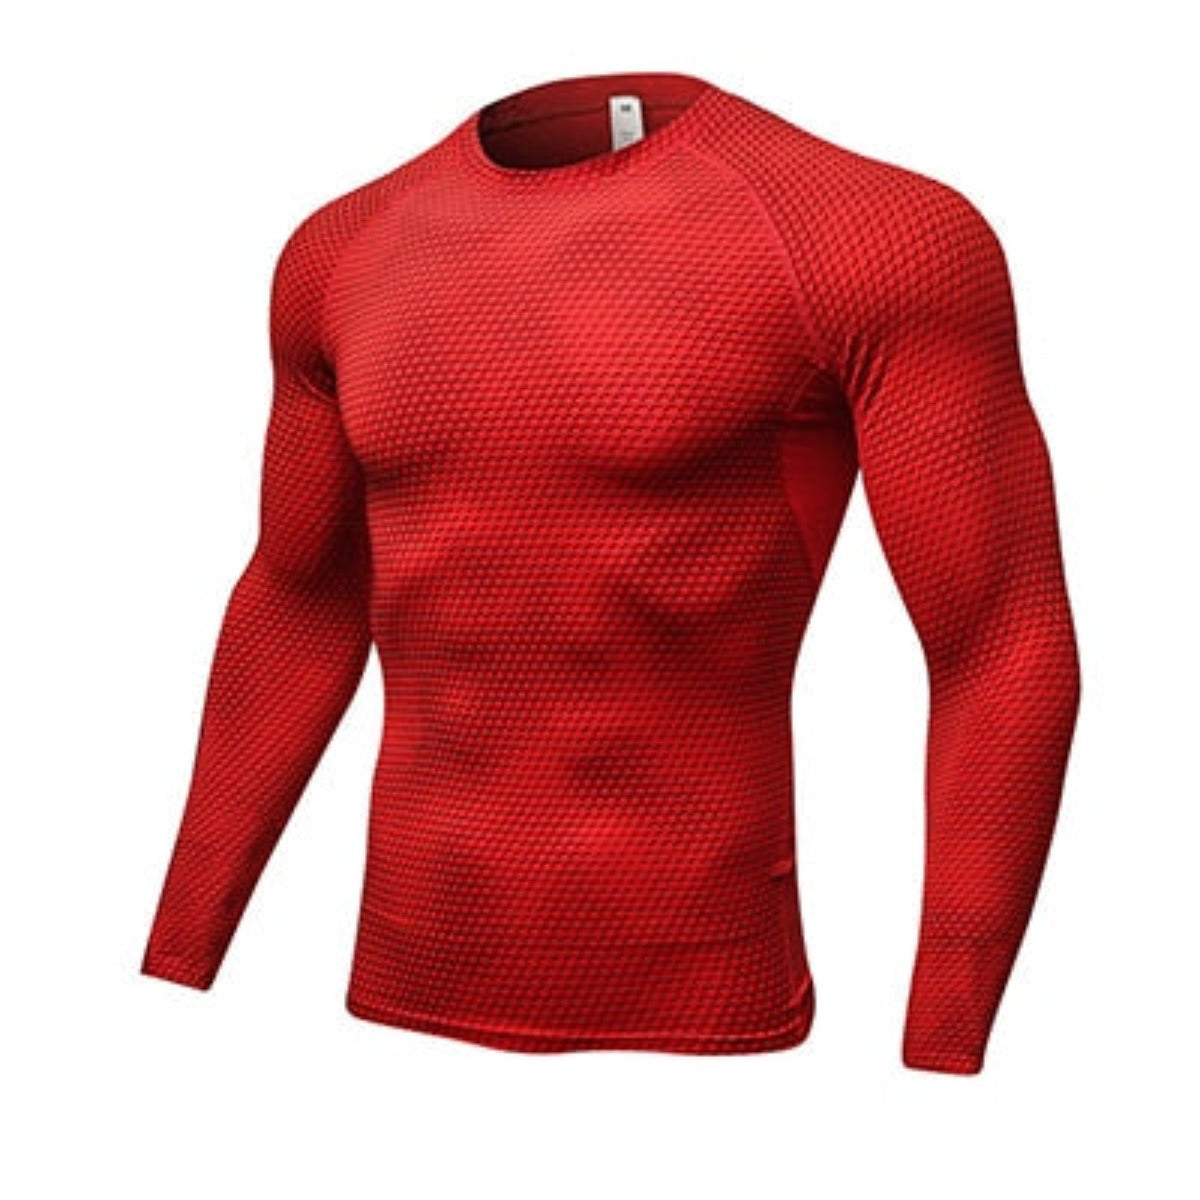 Men's 3D Print Thermal Shirt - Red